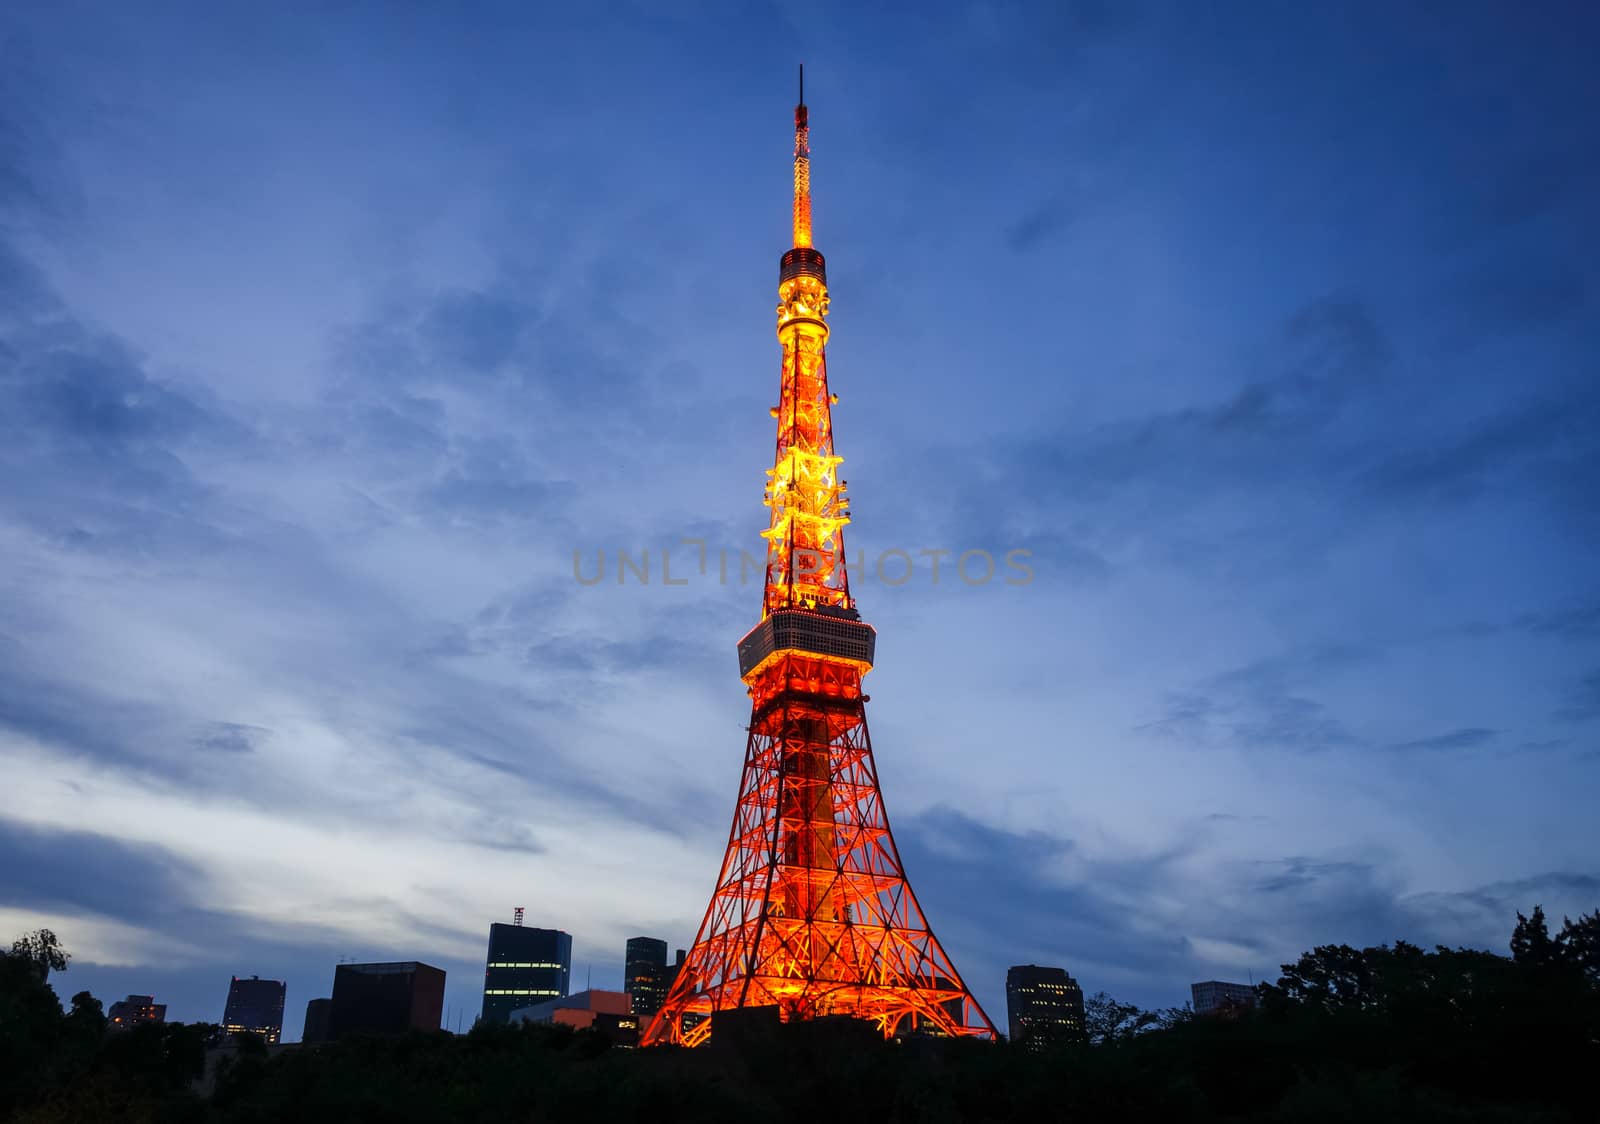 Tokyo tower and city at night, Japan